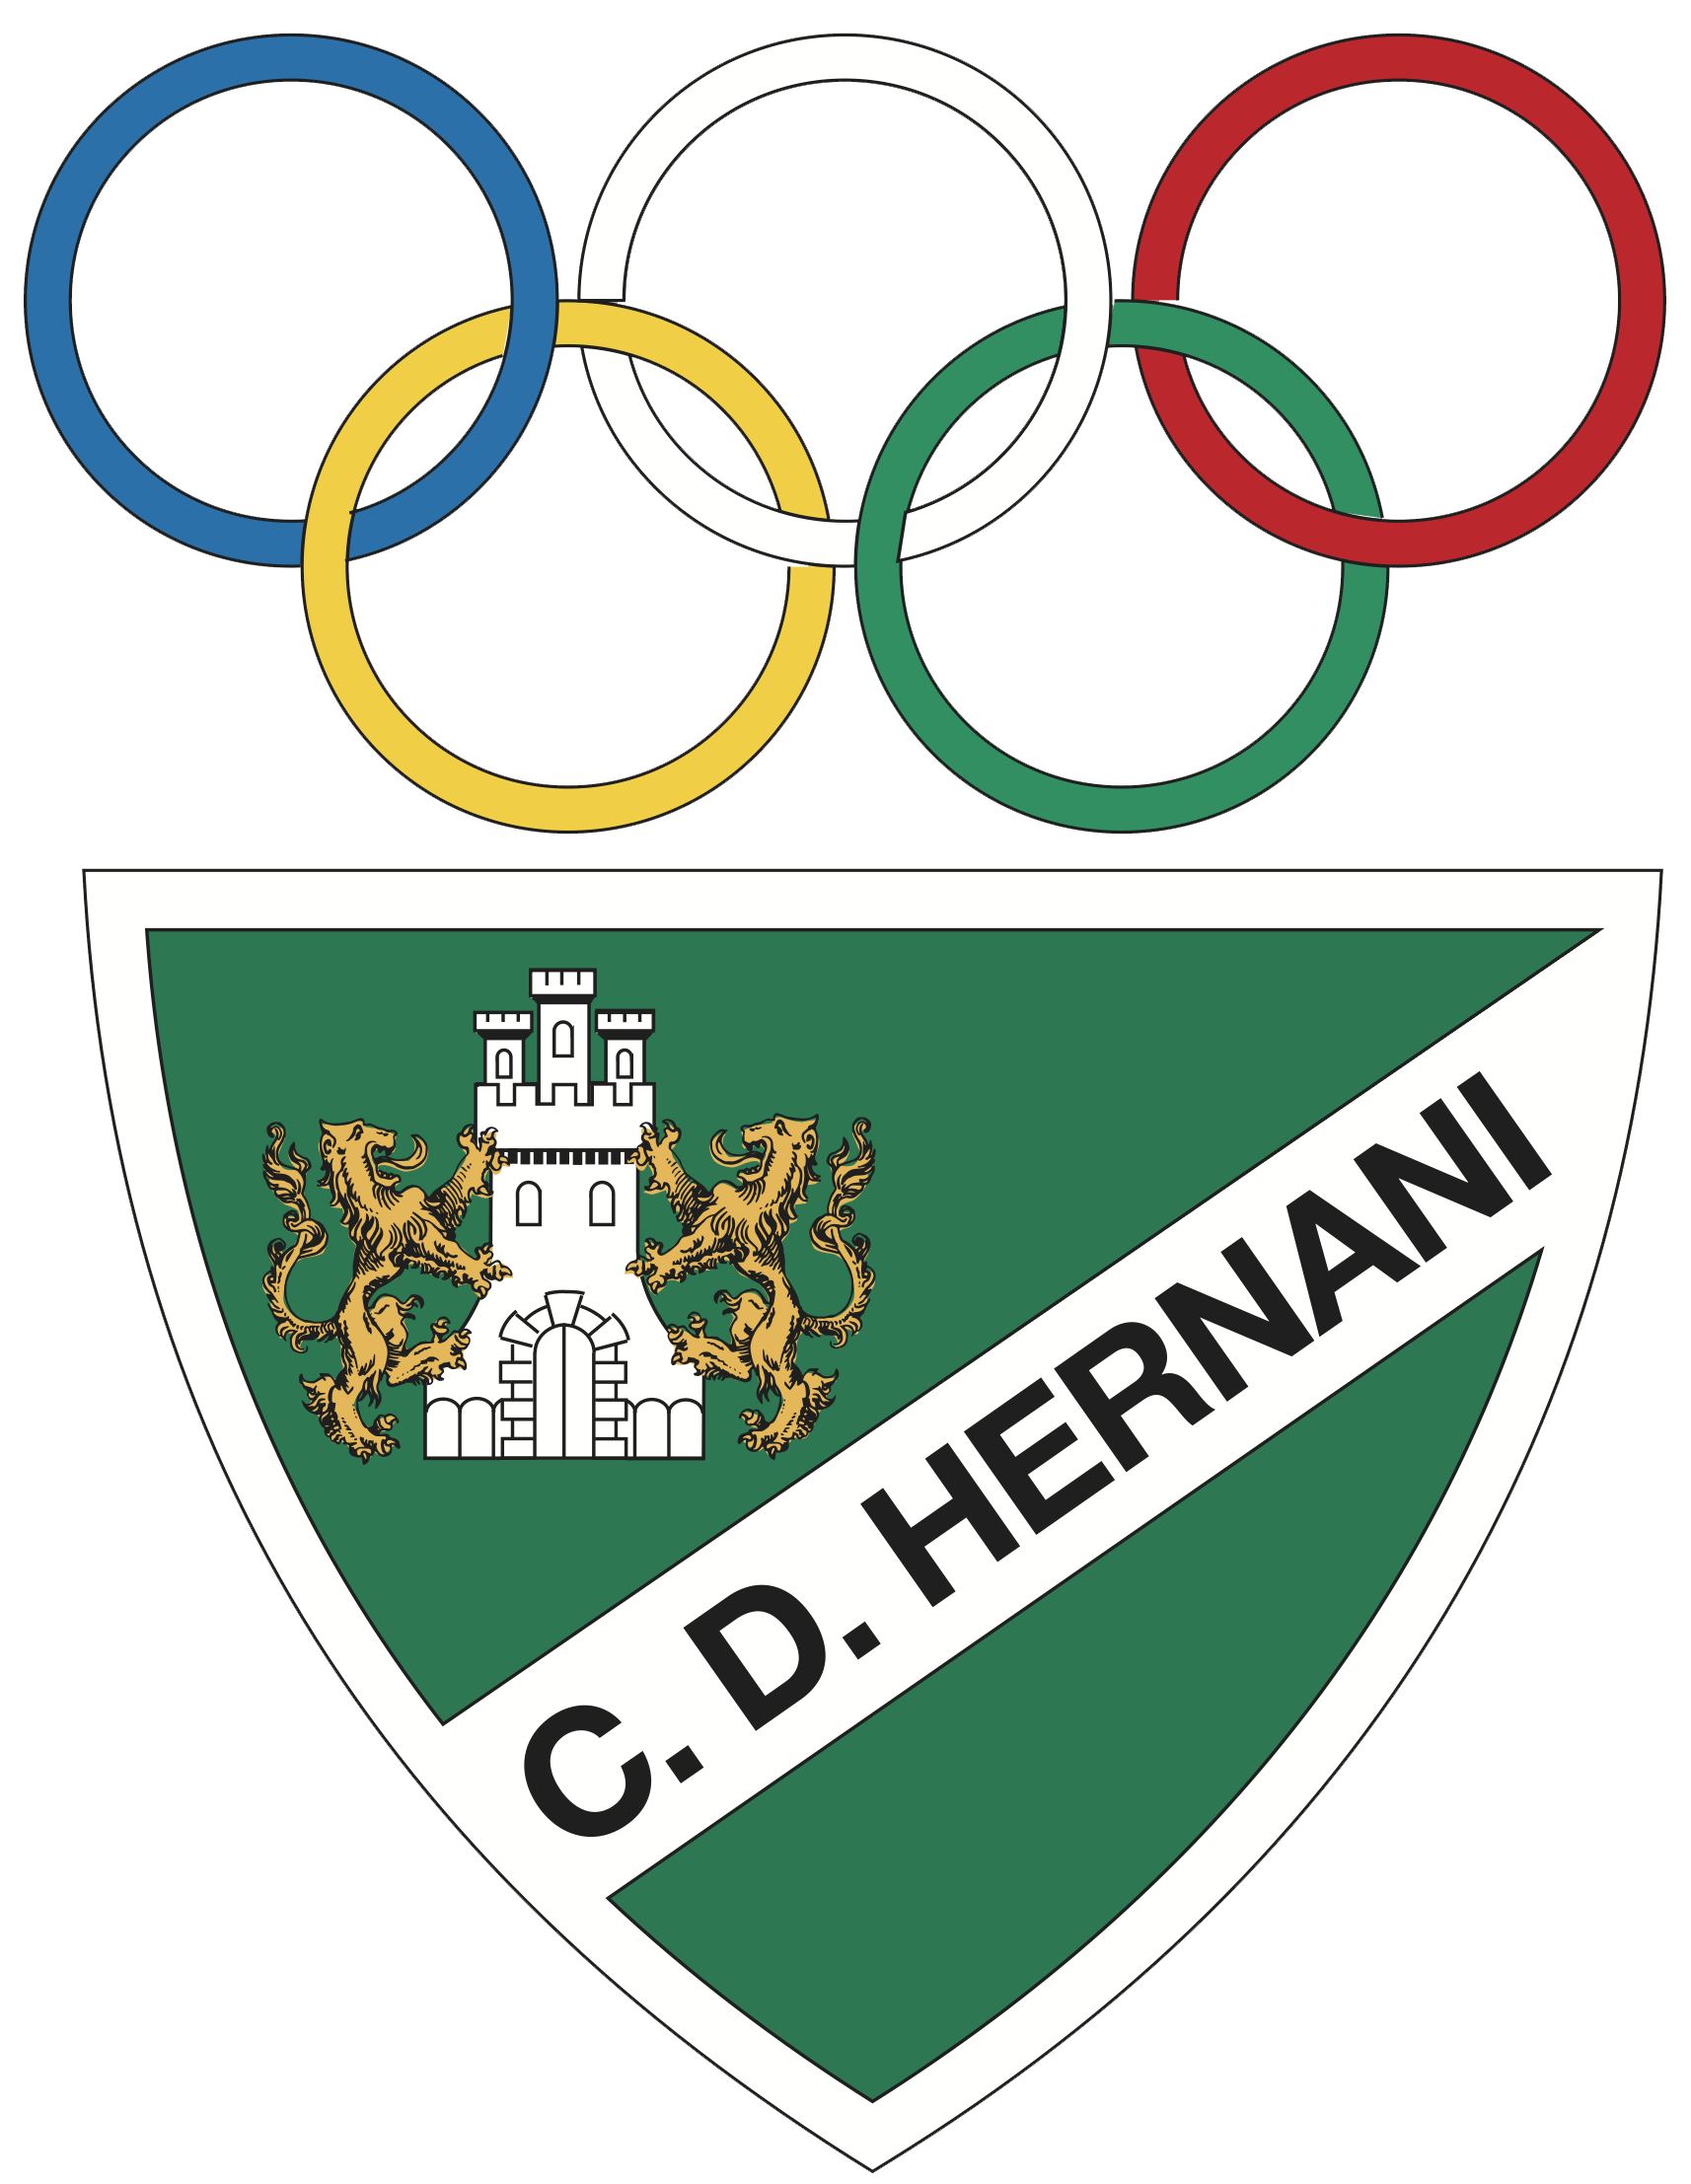 Club Deportivo Hernani